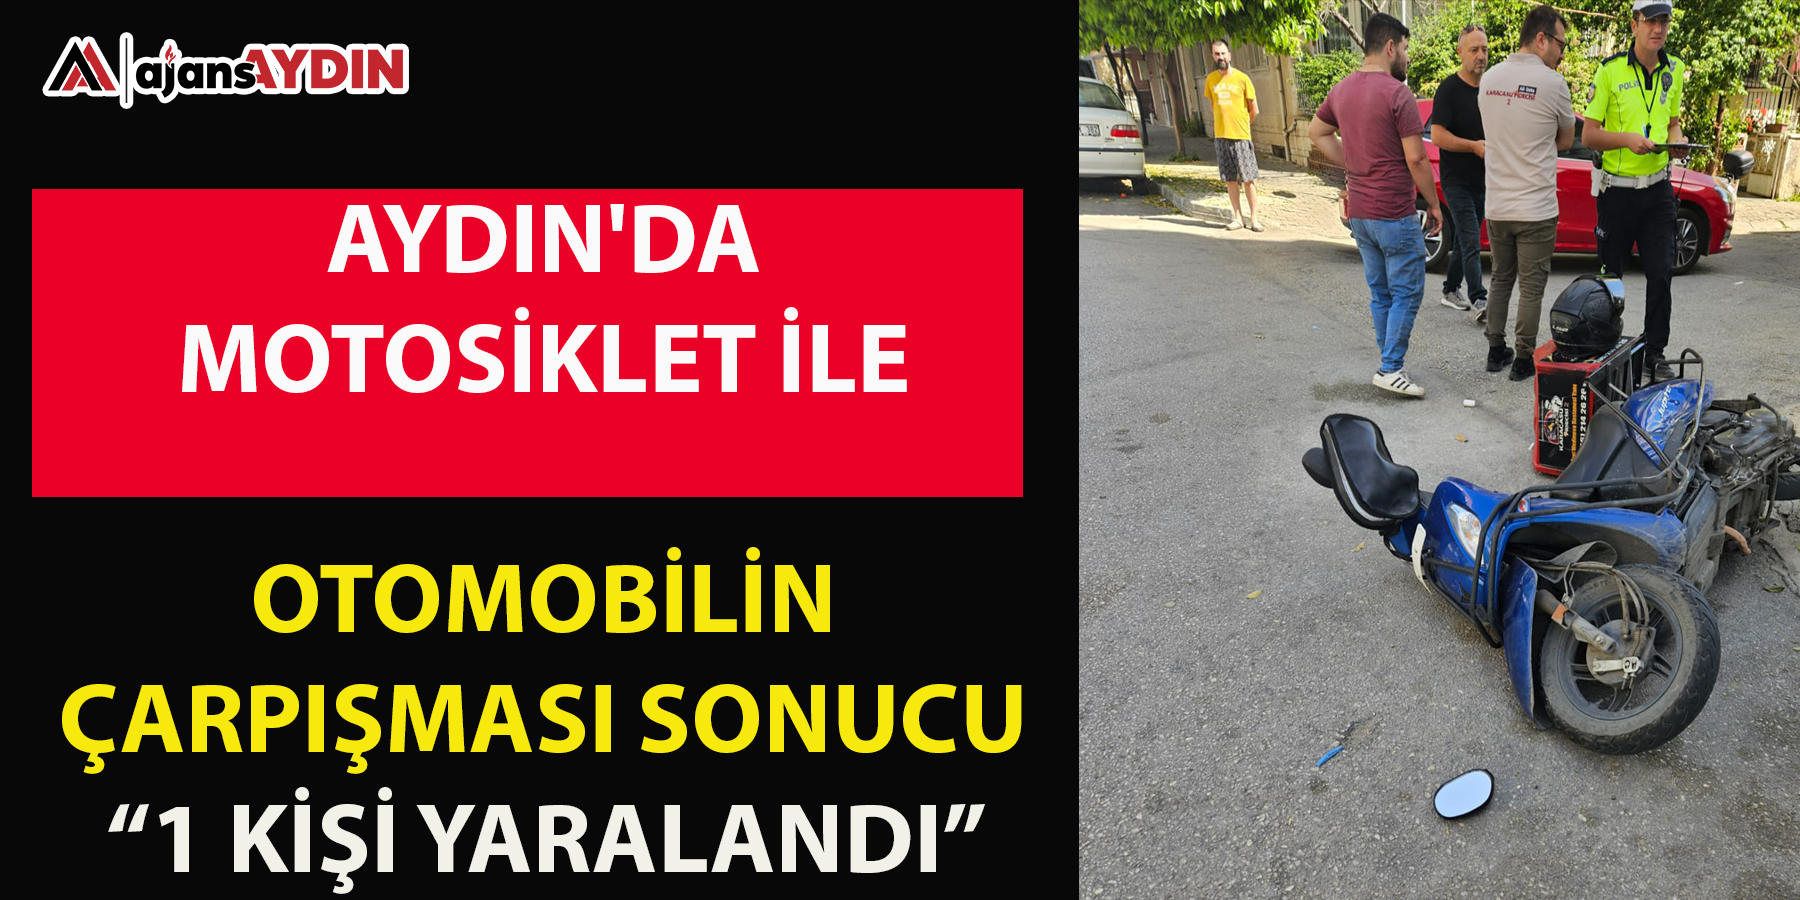 Aydın'da motosiklet ile otomobilin çarpışması sonucu 1 kişi yaralandı